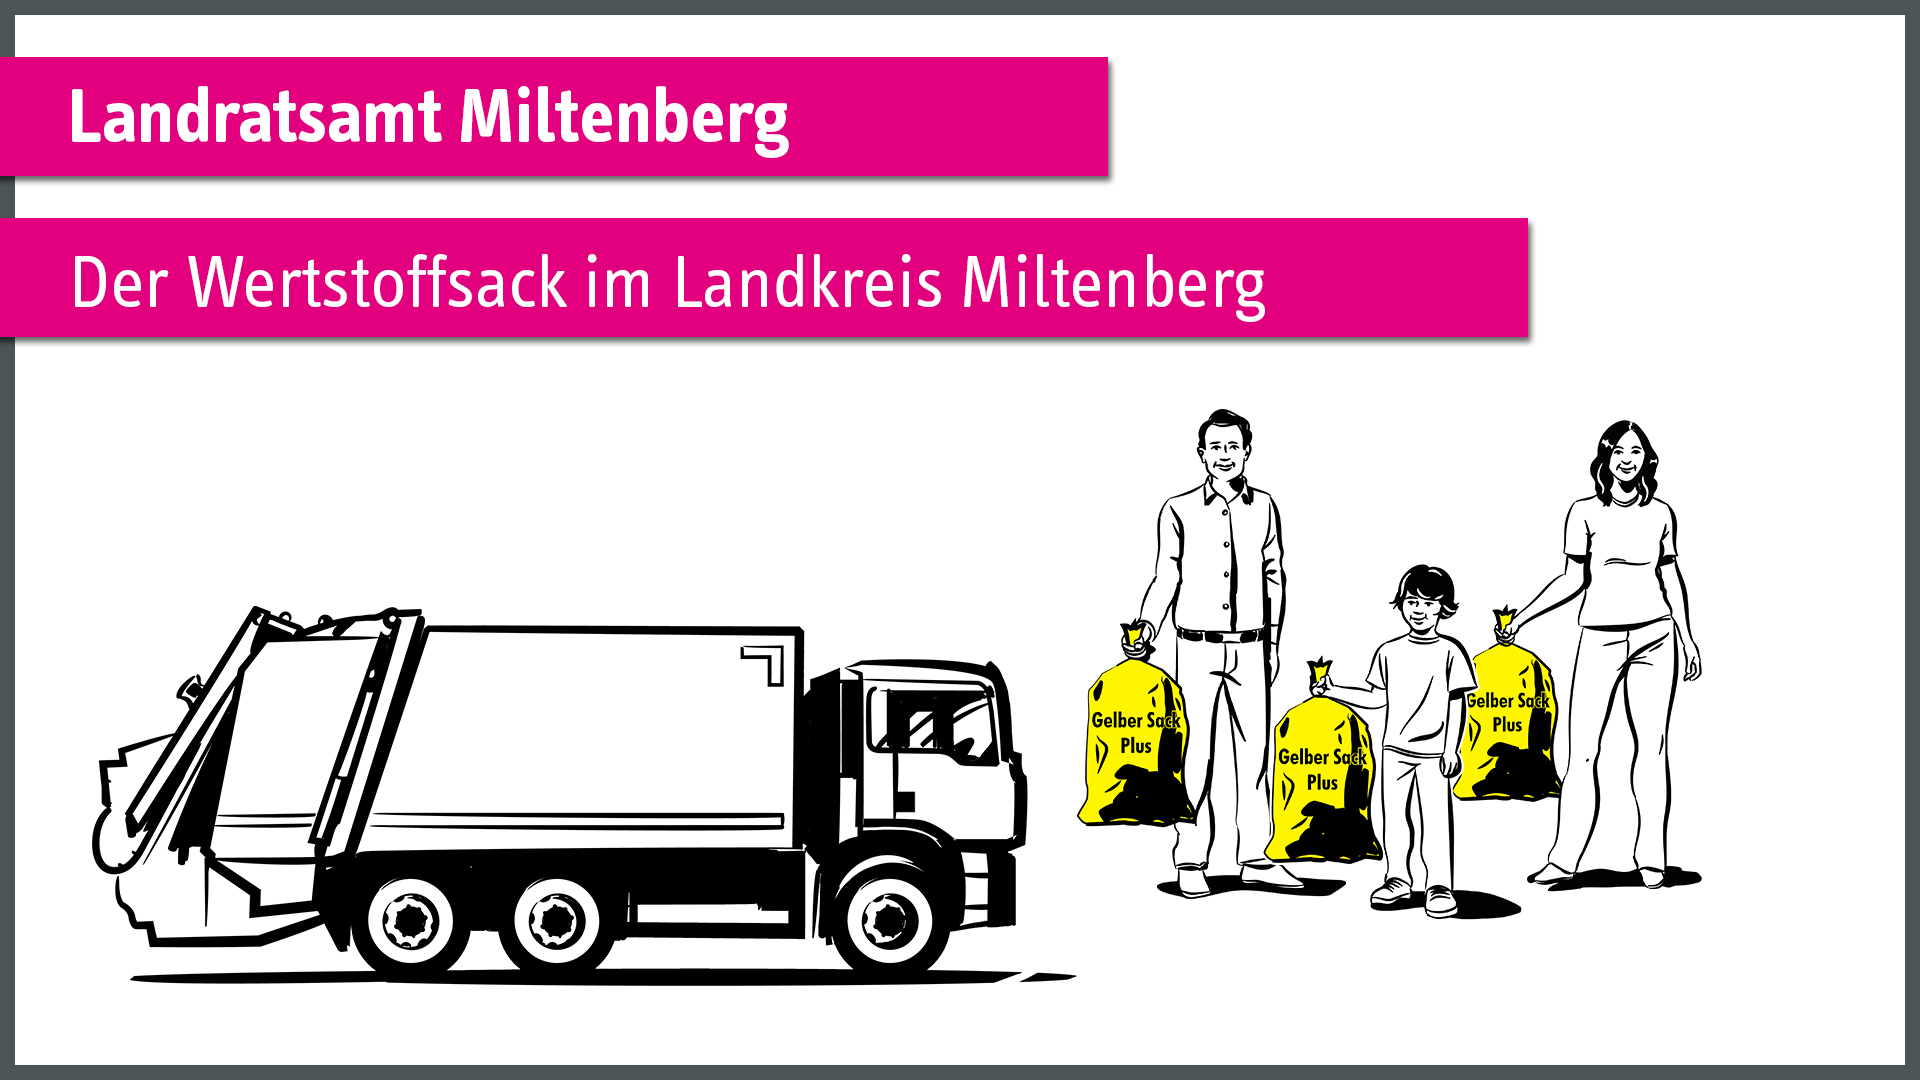 "Wertstoffsack" - Landratsamt Miltenberg